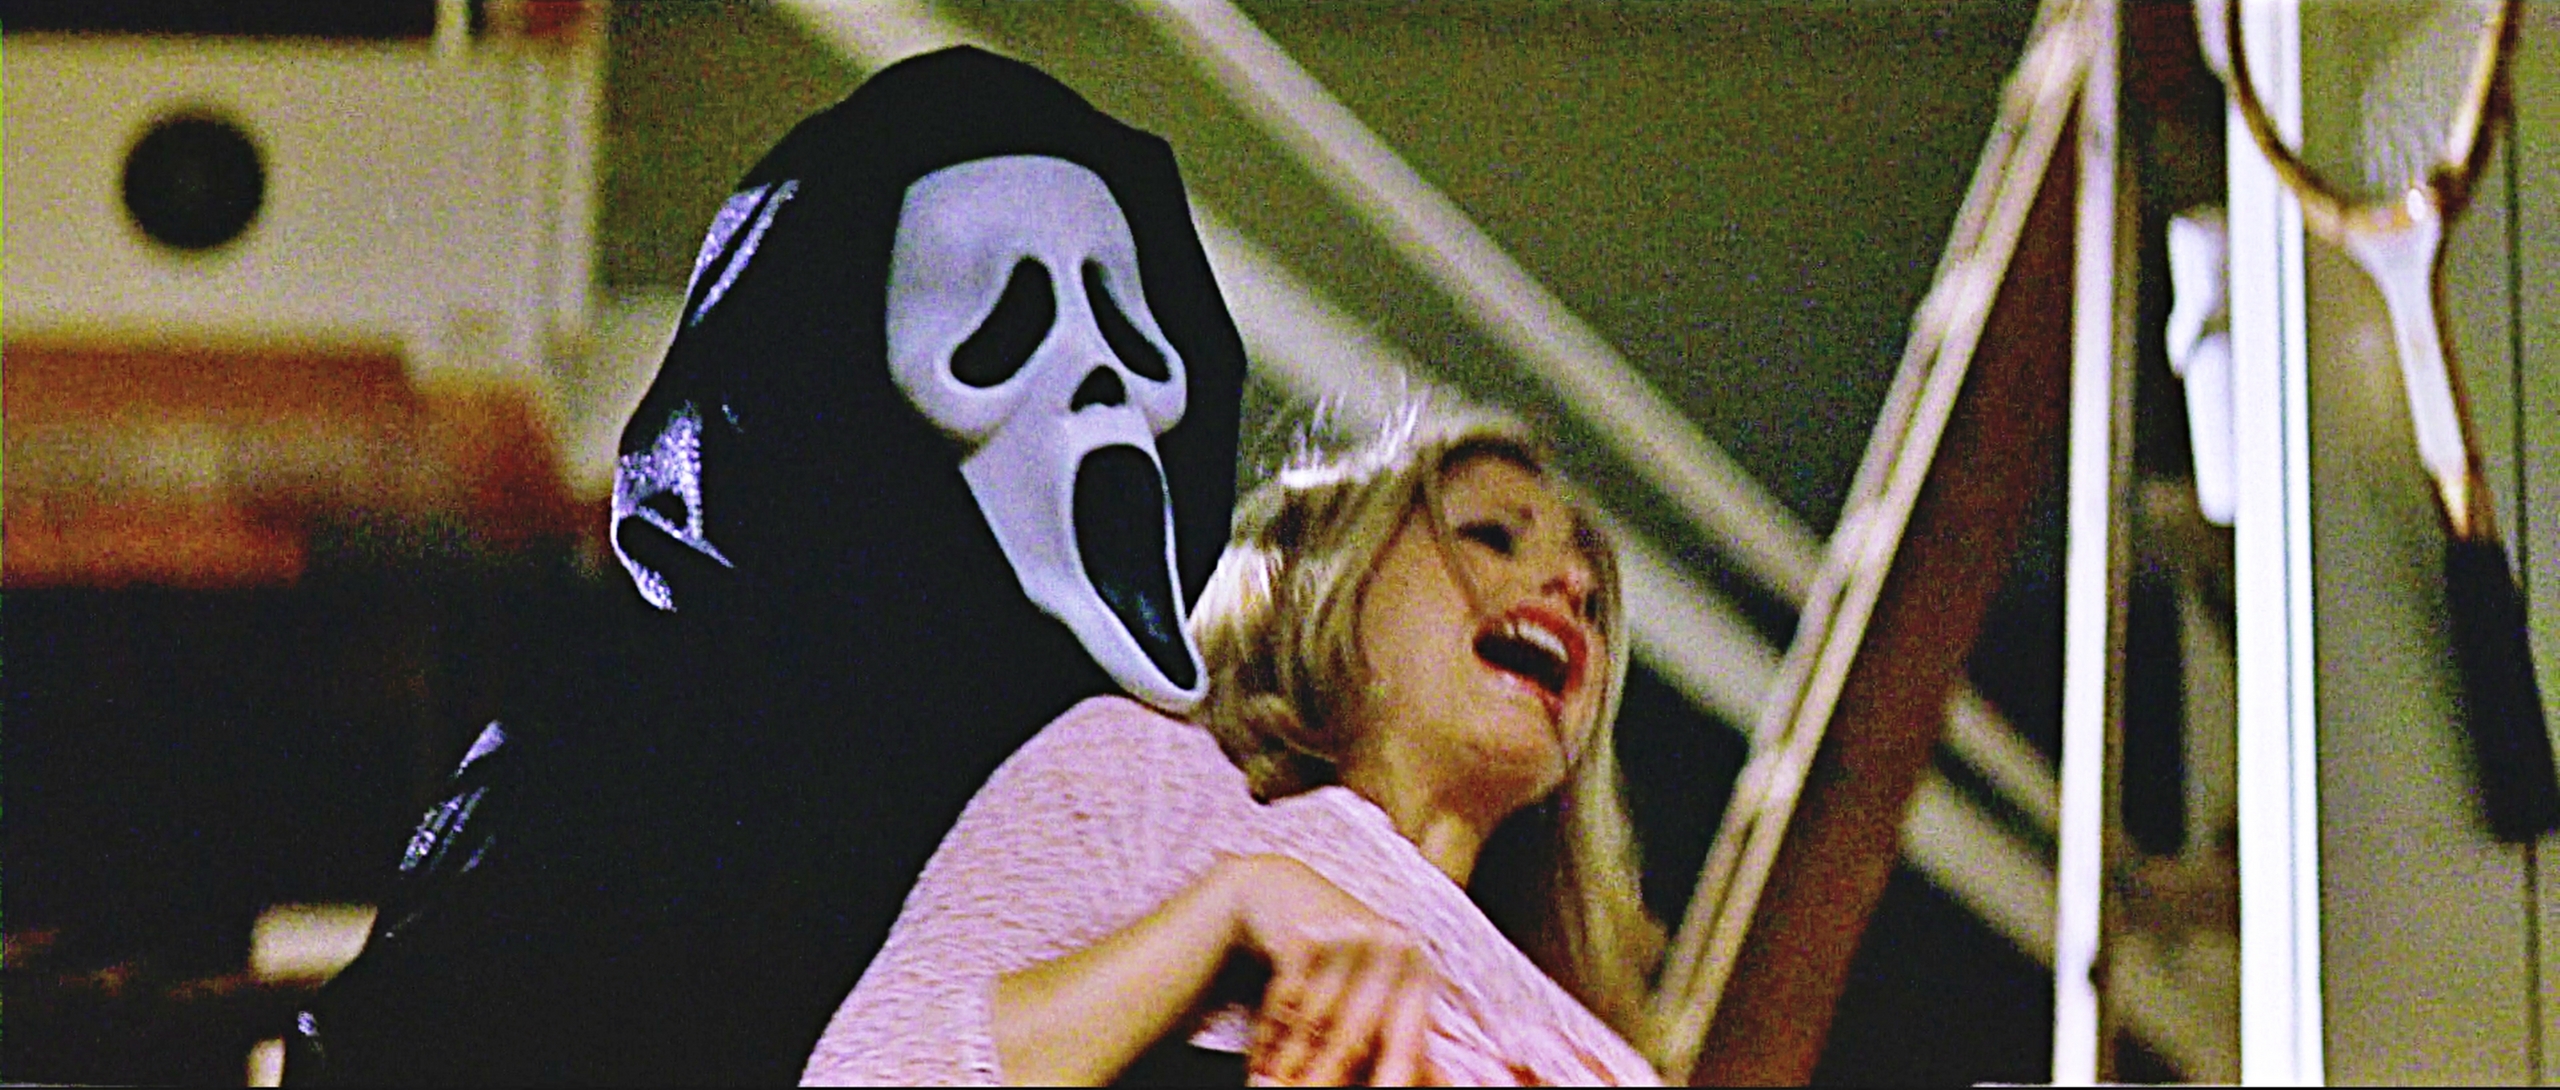 Scream 2 - Ghostface & Cici Cooper